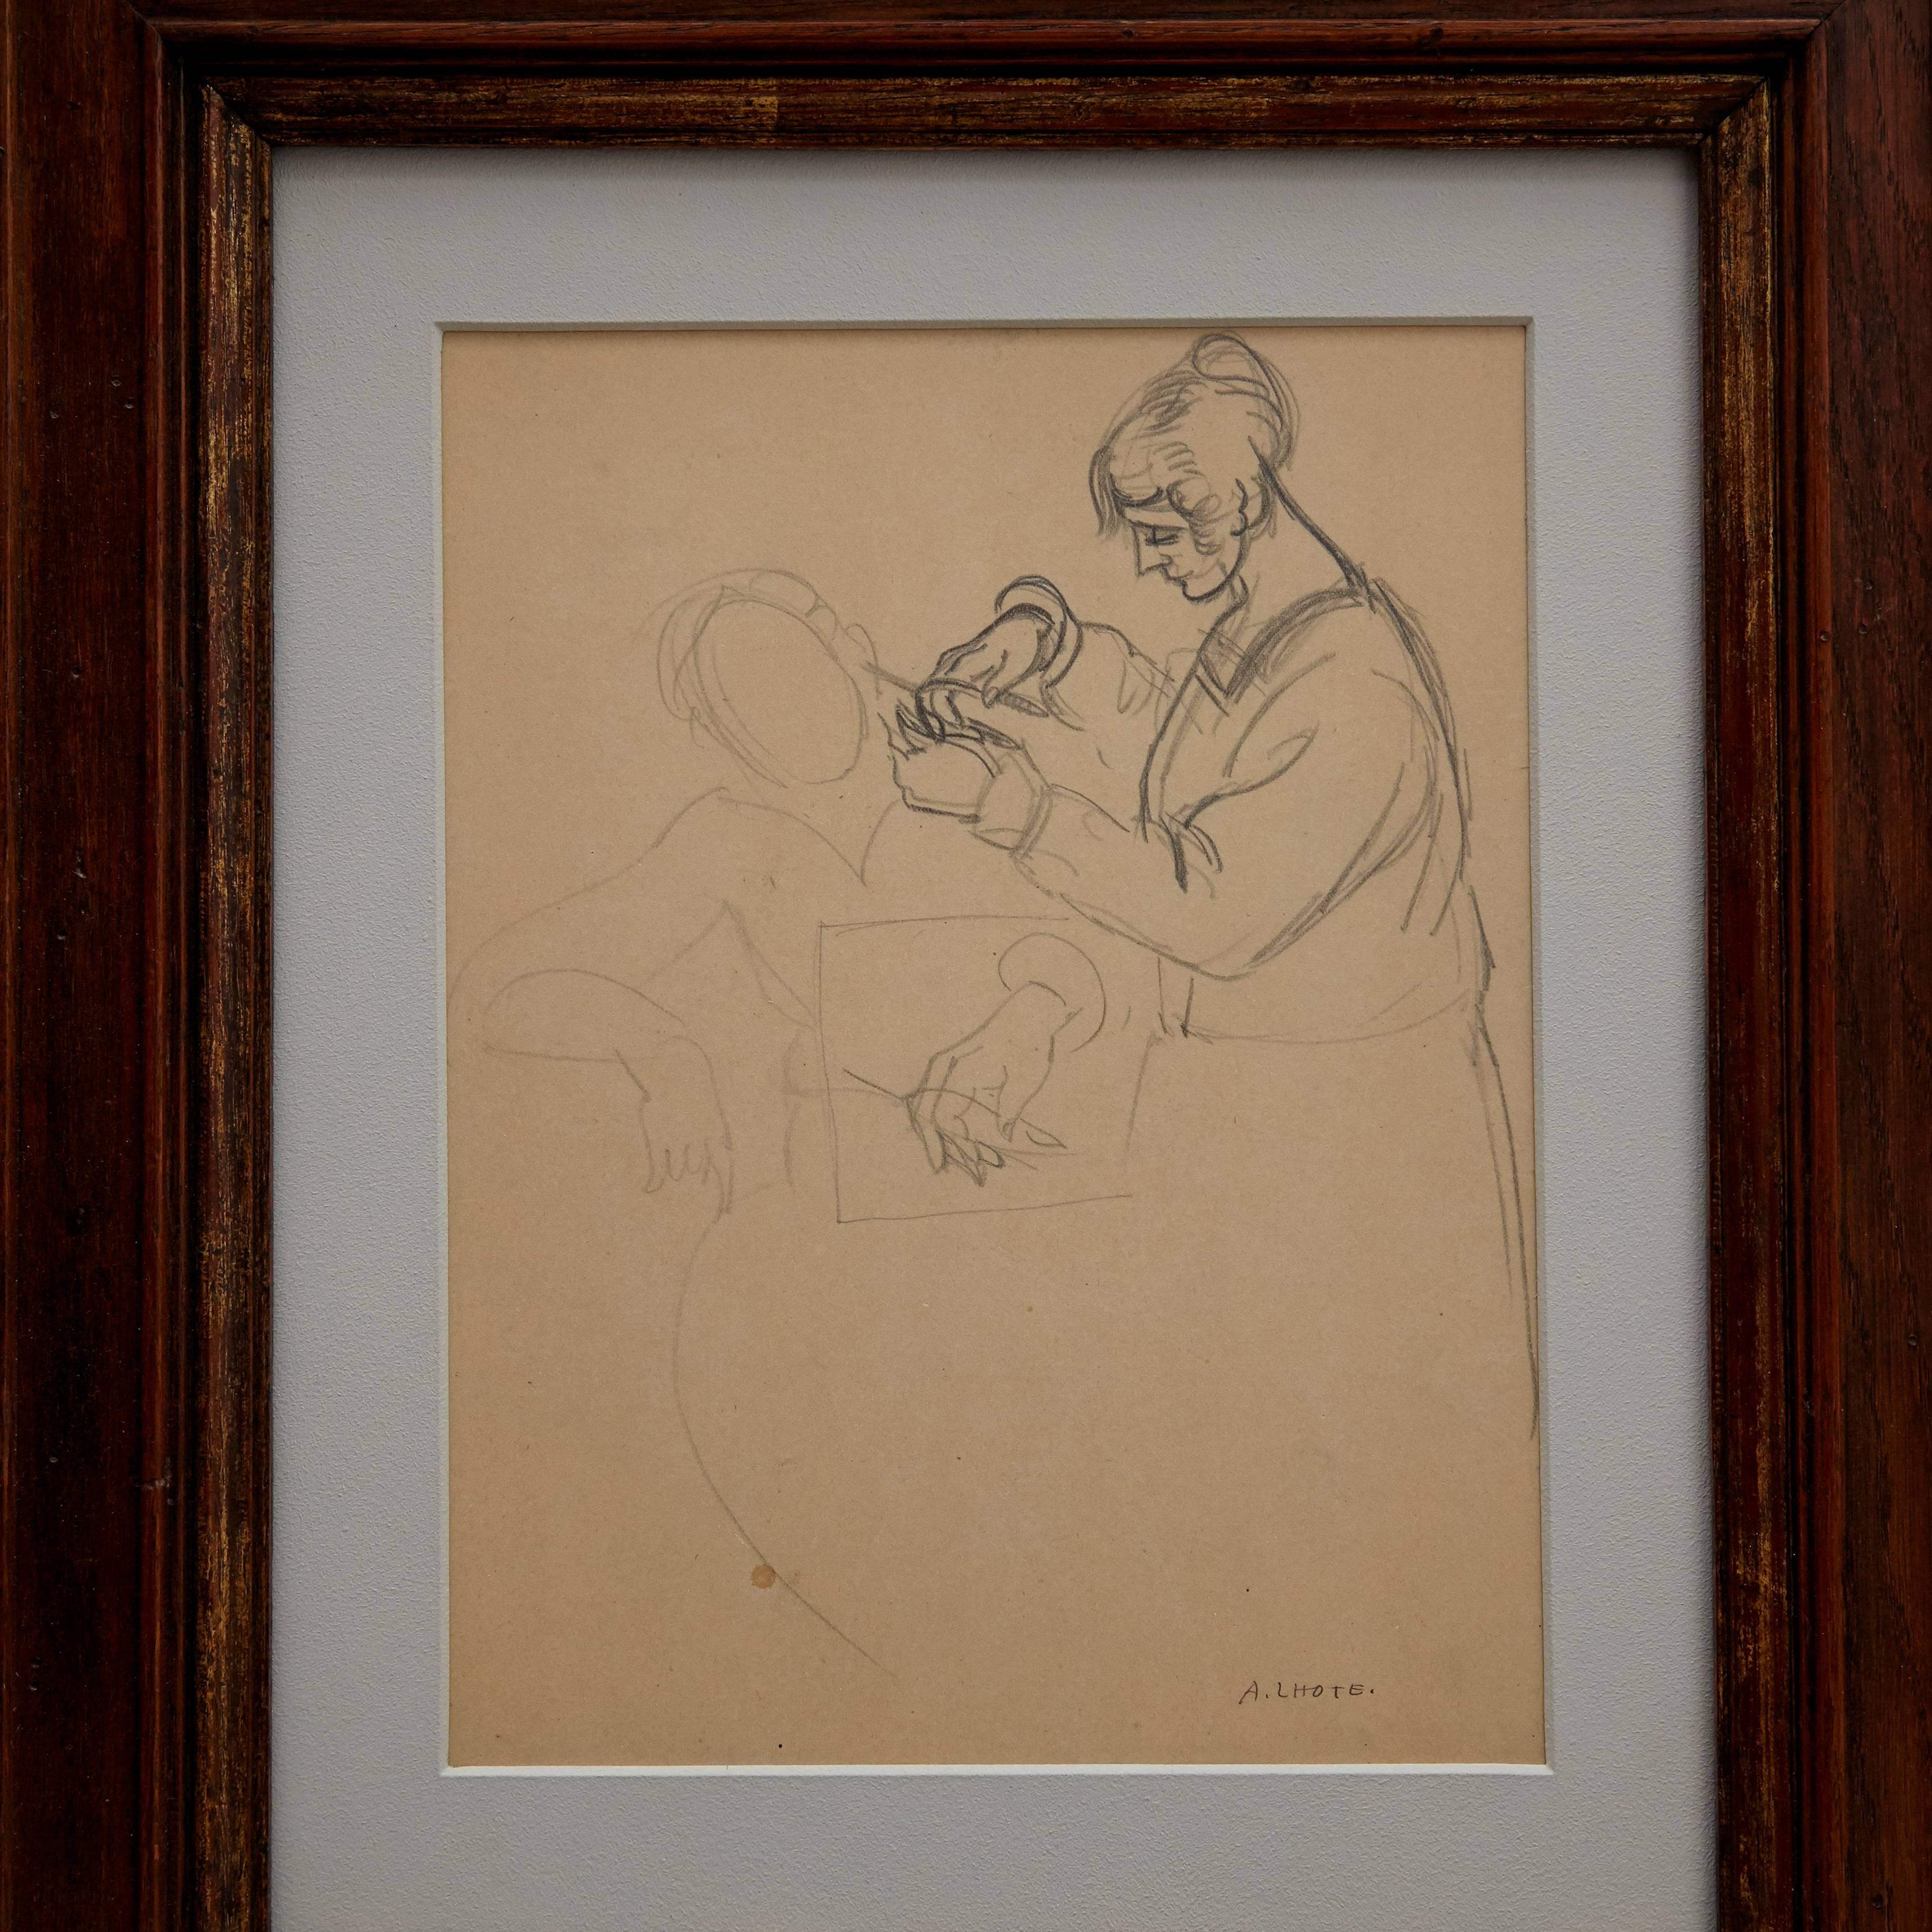 Dessin d'André Lhote, vers 1920.

Signé à la main

Dimensions de la couche : 26 x 20 cm. Signé à la main.

Encadré dans un cadre du 19ème siècle.

En état original.

André Lhote, né en 1885, est un peintre cubiste français qui peint des